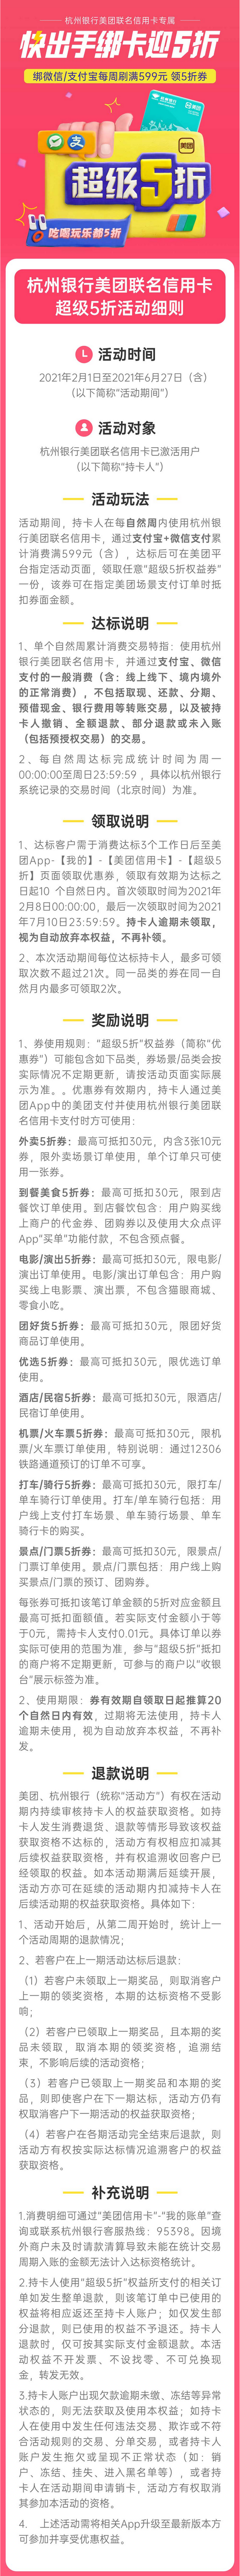 杭州银行美团联名信用卡超级5折活动细则